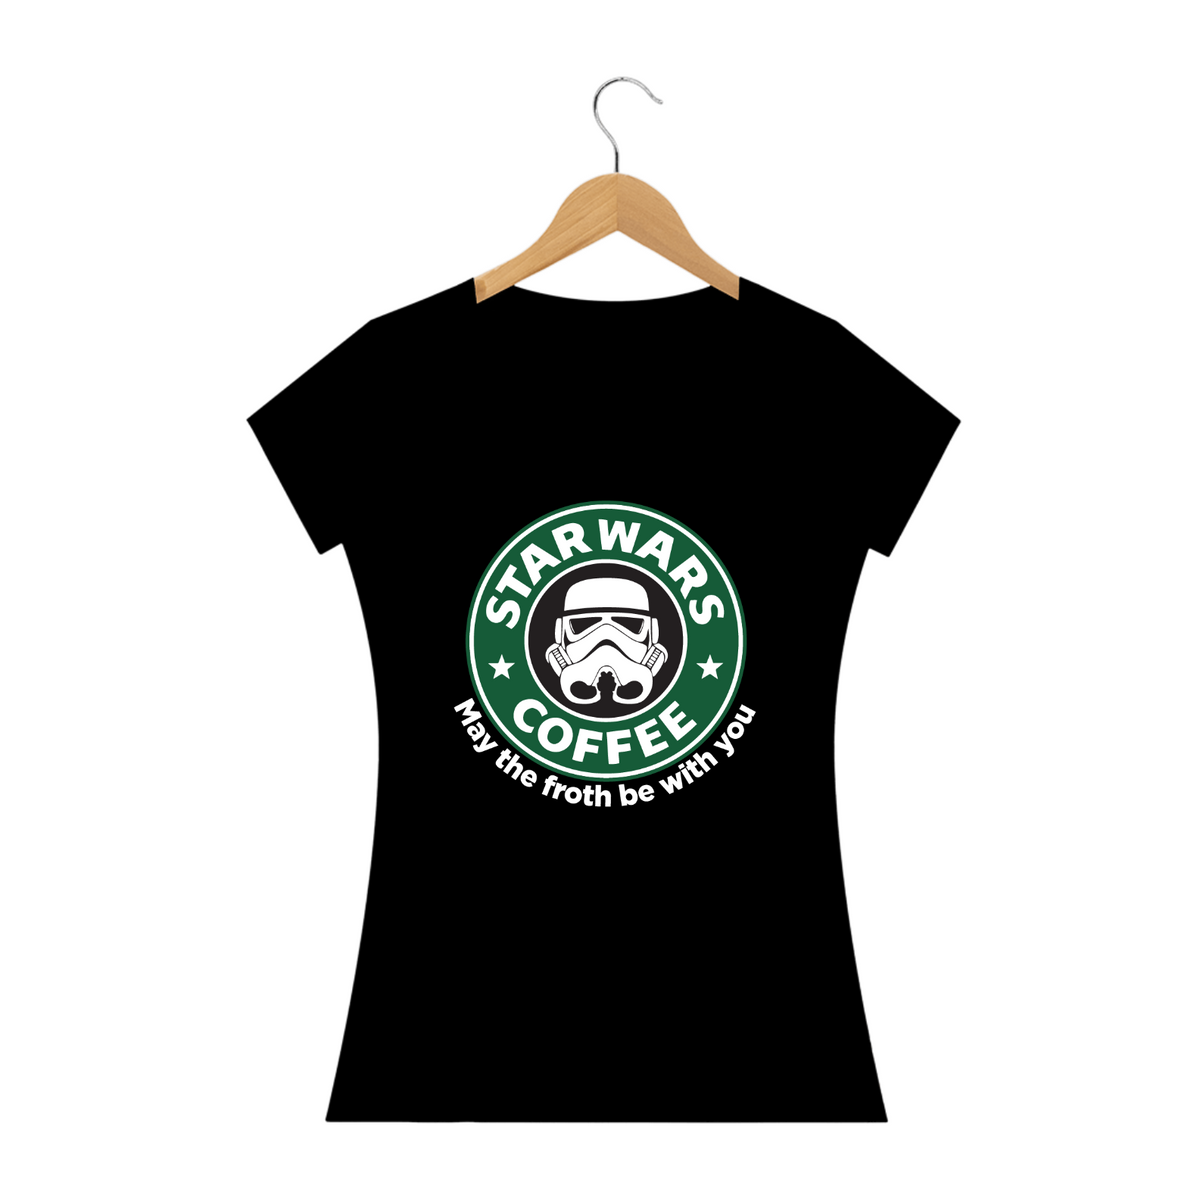 Nome do produto: Star Wars Coffee (cores escuras)